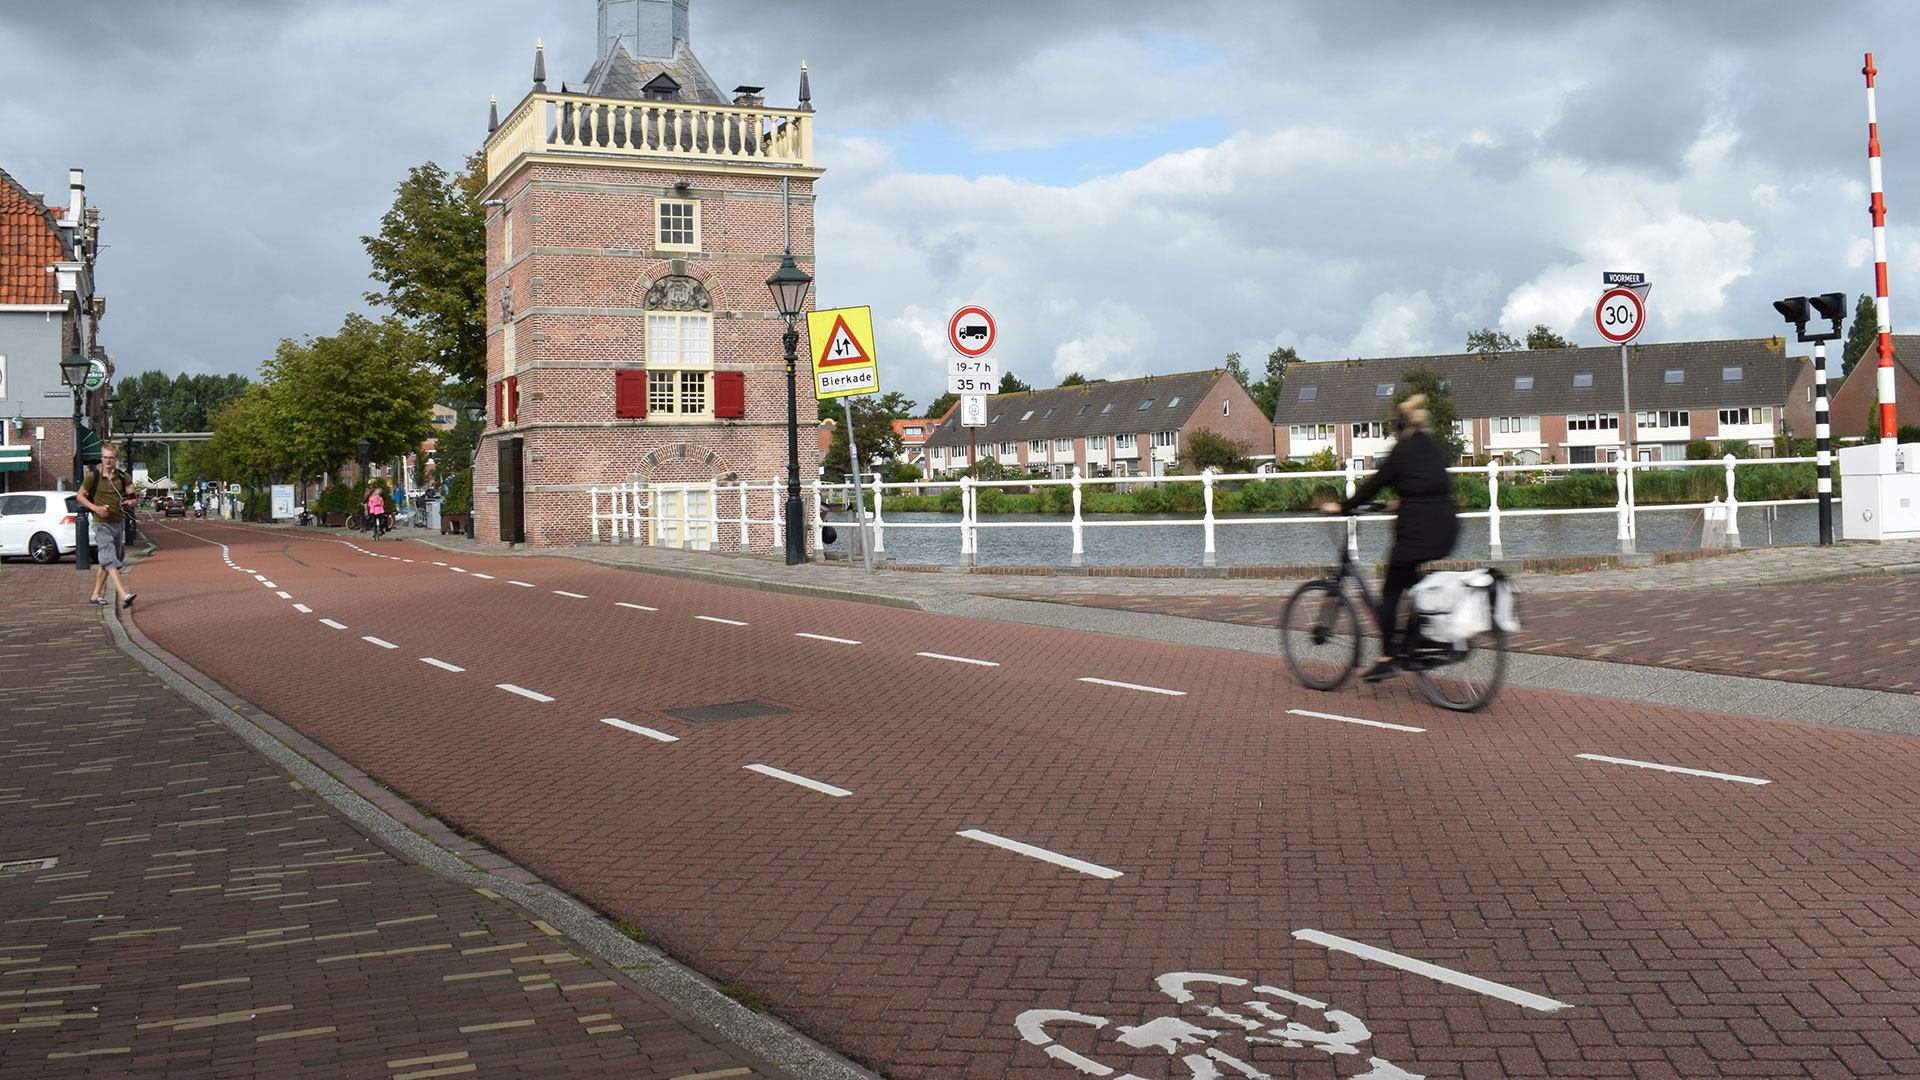 Doorfietsroute regio Alkmaar onmisbaar voor duurzame mobiliteit l Royal HaskoningDHV